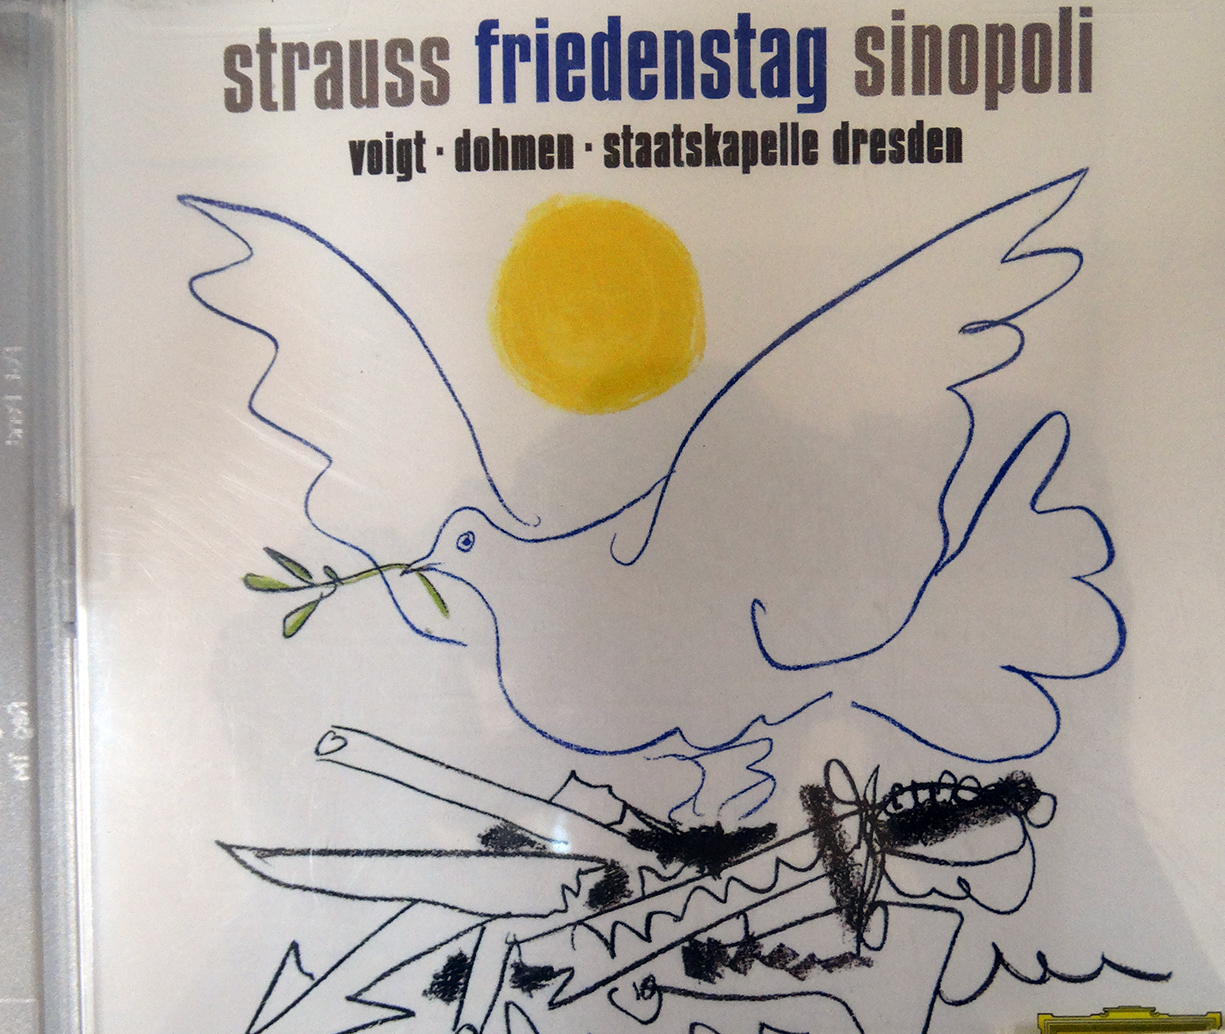 "Friedenstag". օպերա 1 գործողությամբ 